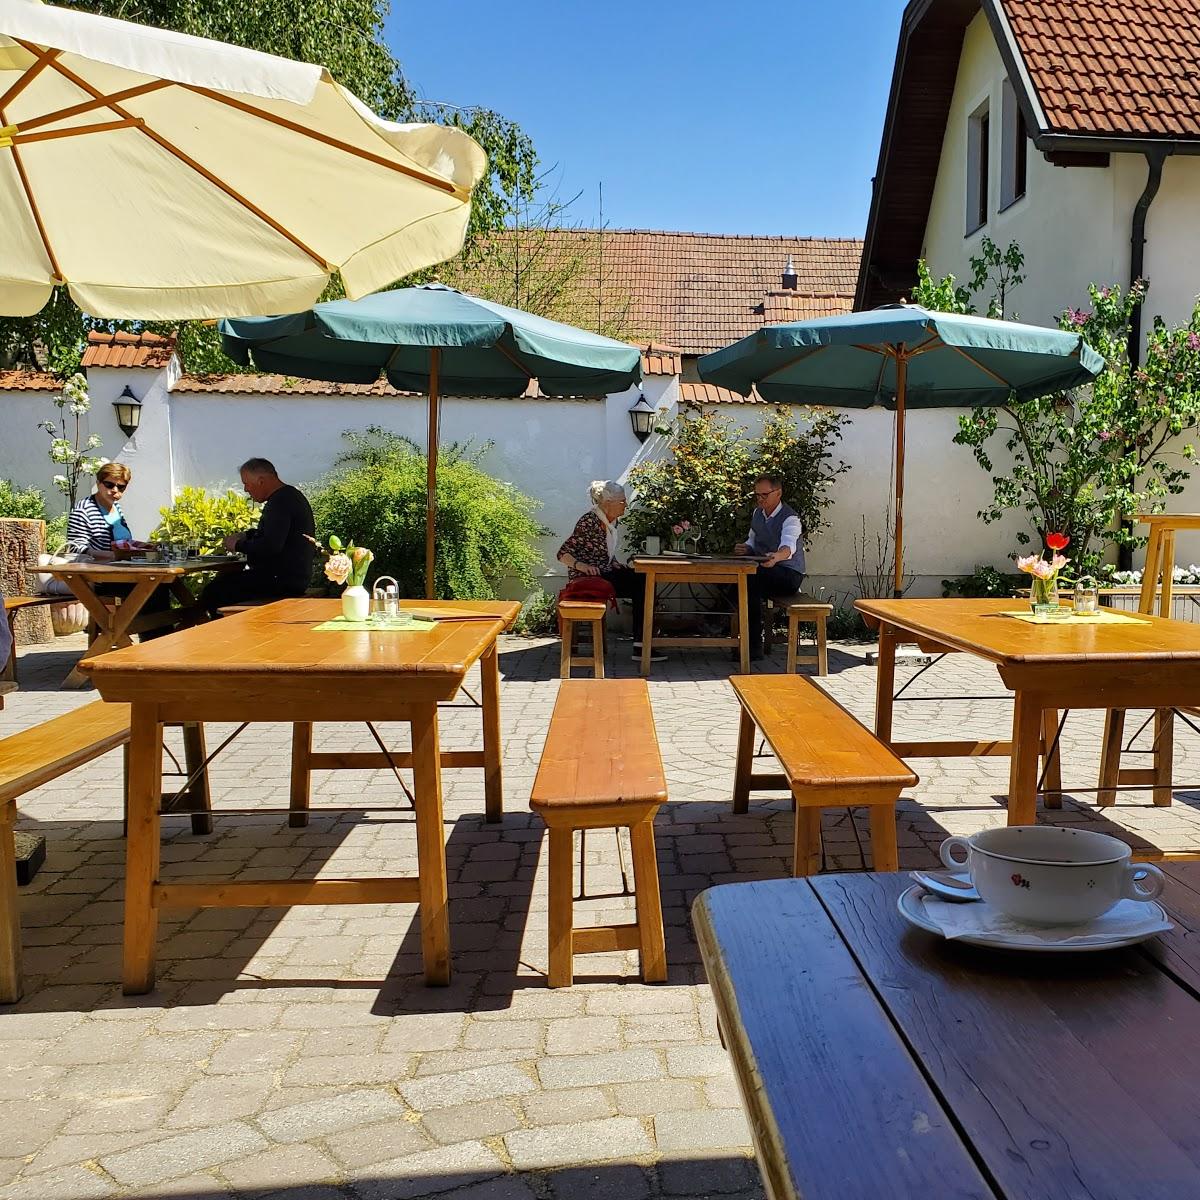 Restaurant "Weinhof Gill" in Neusiedl